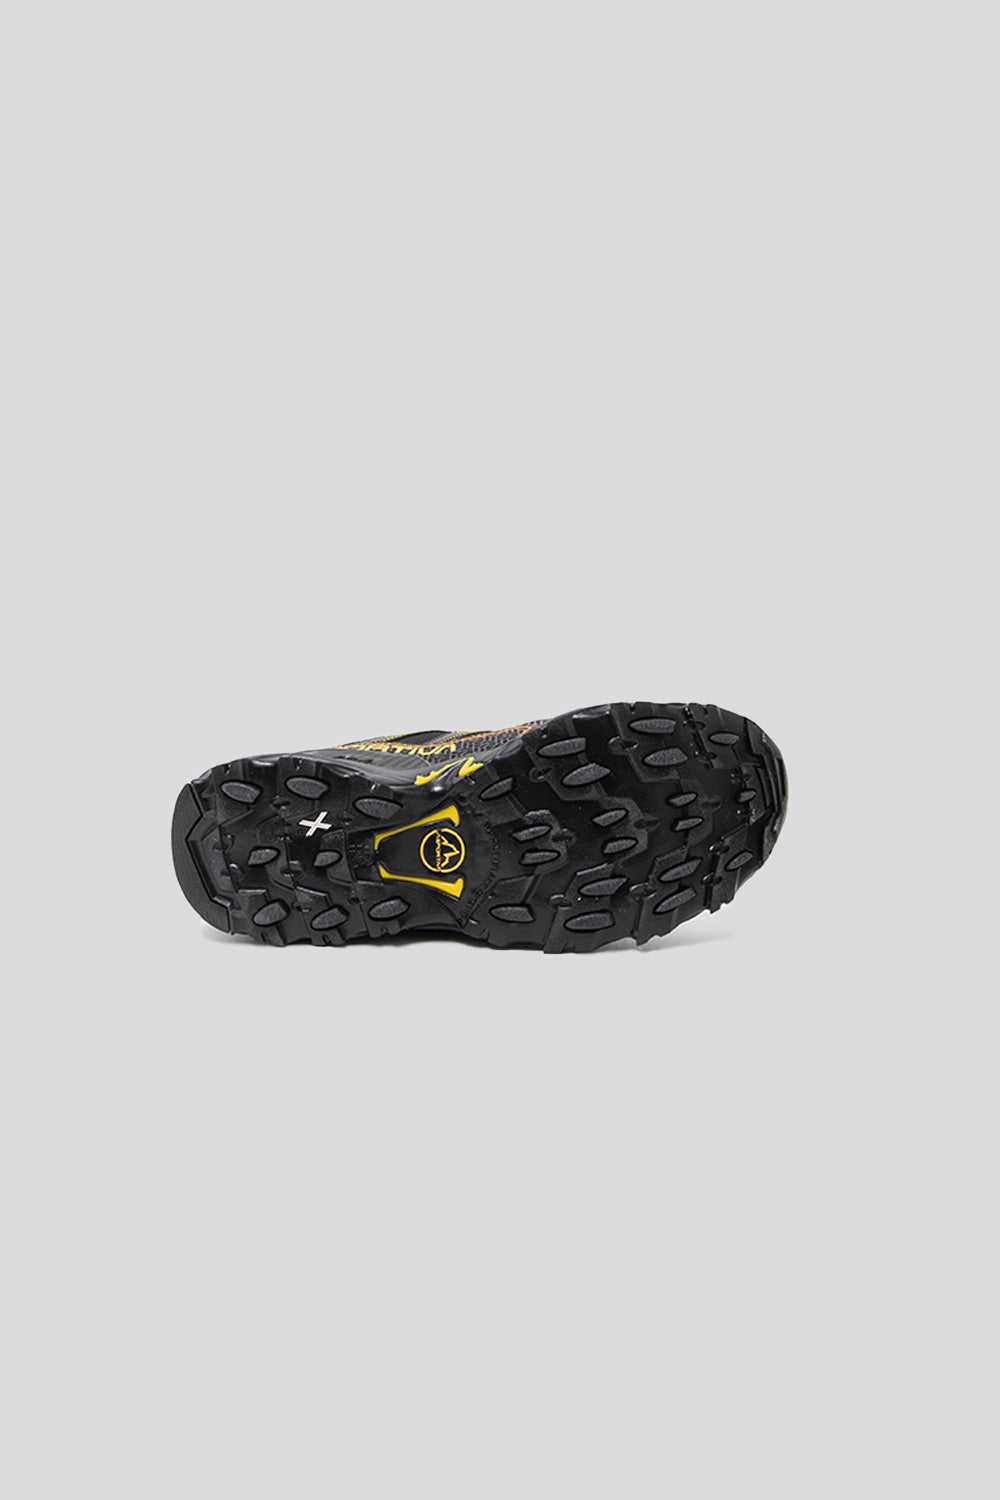 La Sportiva Ultra Raptor II Shoe in Black / Yellow